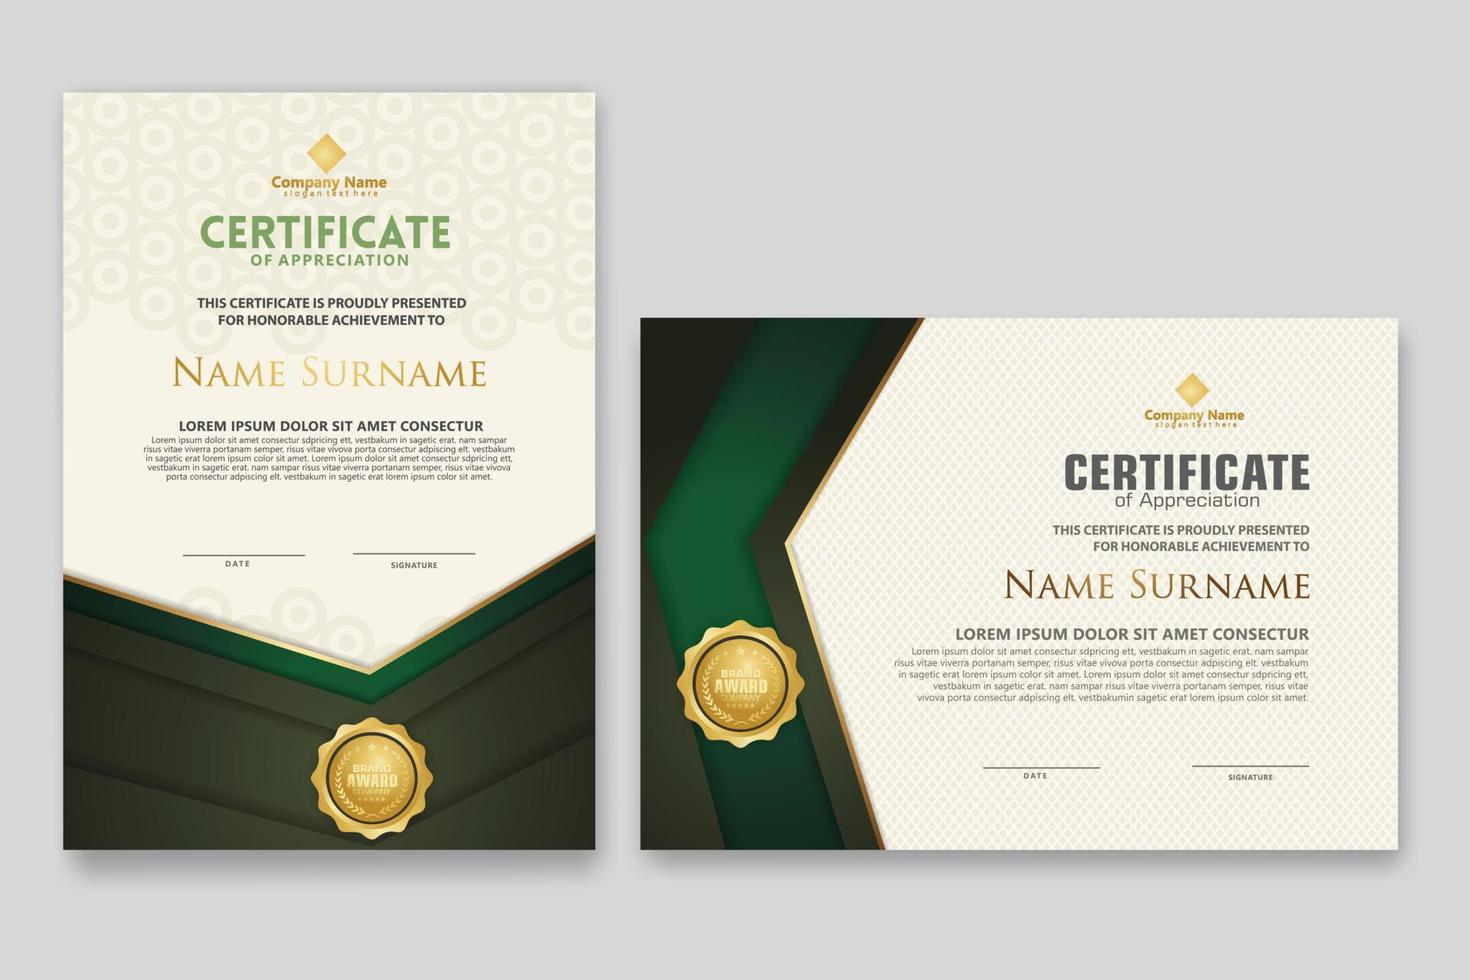 certifikatmall med lyxmärke och elegans modern mönsterbakgrund. för uppskattning, prestationer, pris, affärs- och utbildningsbehov. vektor illustration